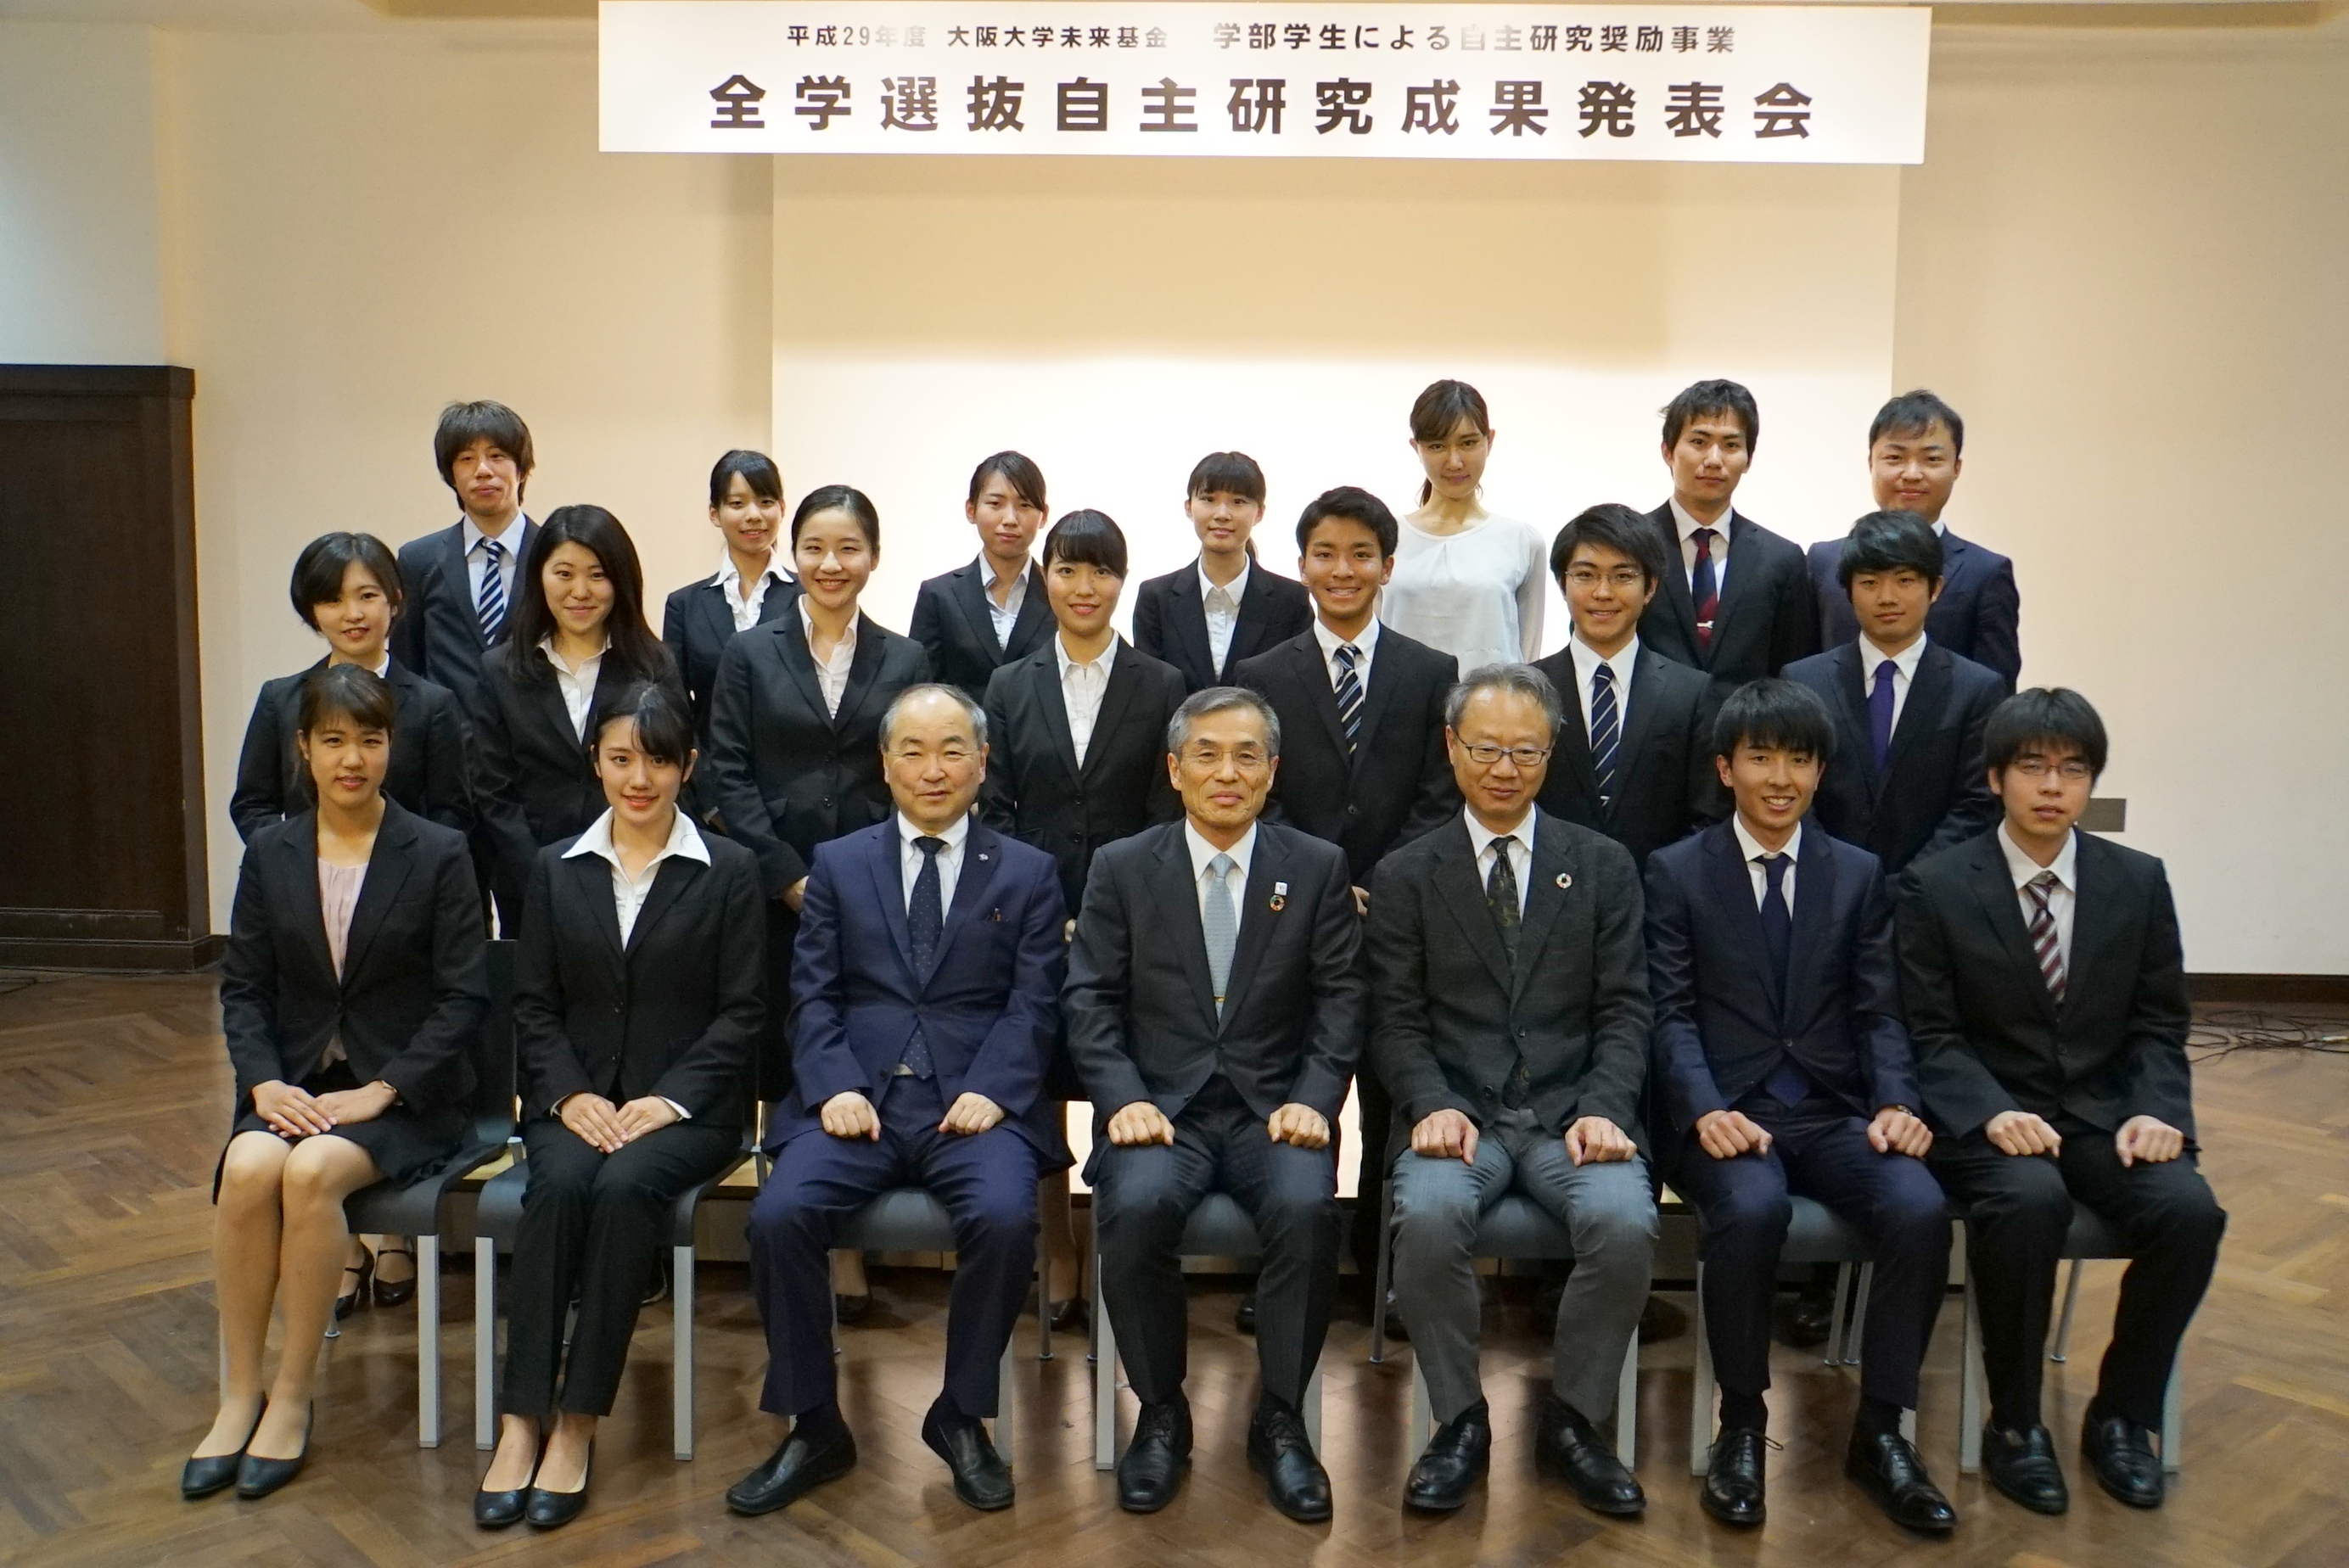 平成29年度「大阪大学未来基金　学部学生による自主研究奨励事業」の全学選抜自主研究成果発表会を開催しました。